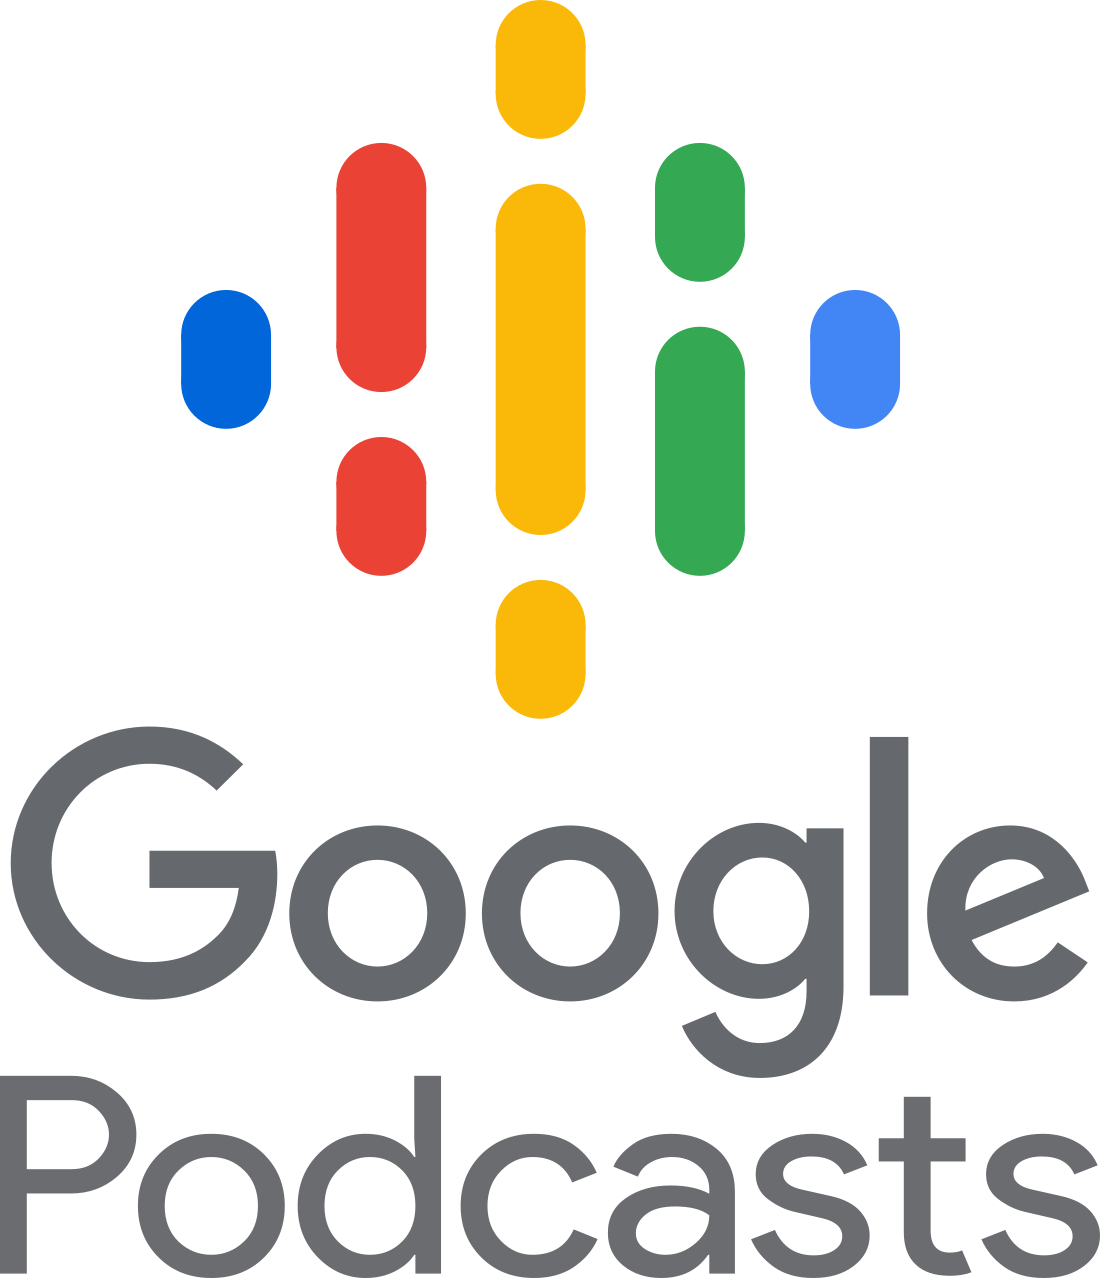 google podcasts logo 7 - Google Podcasts Logo